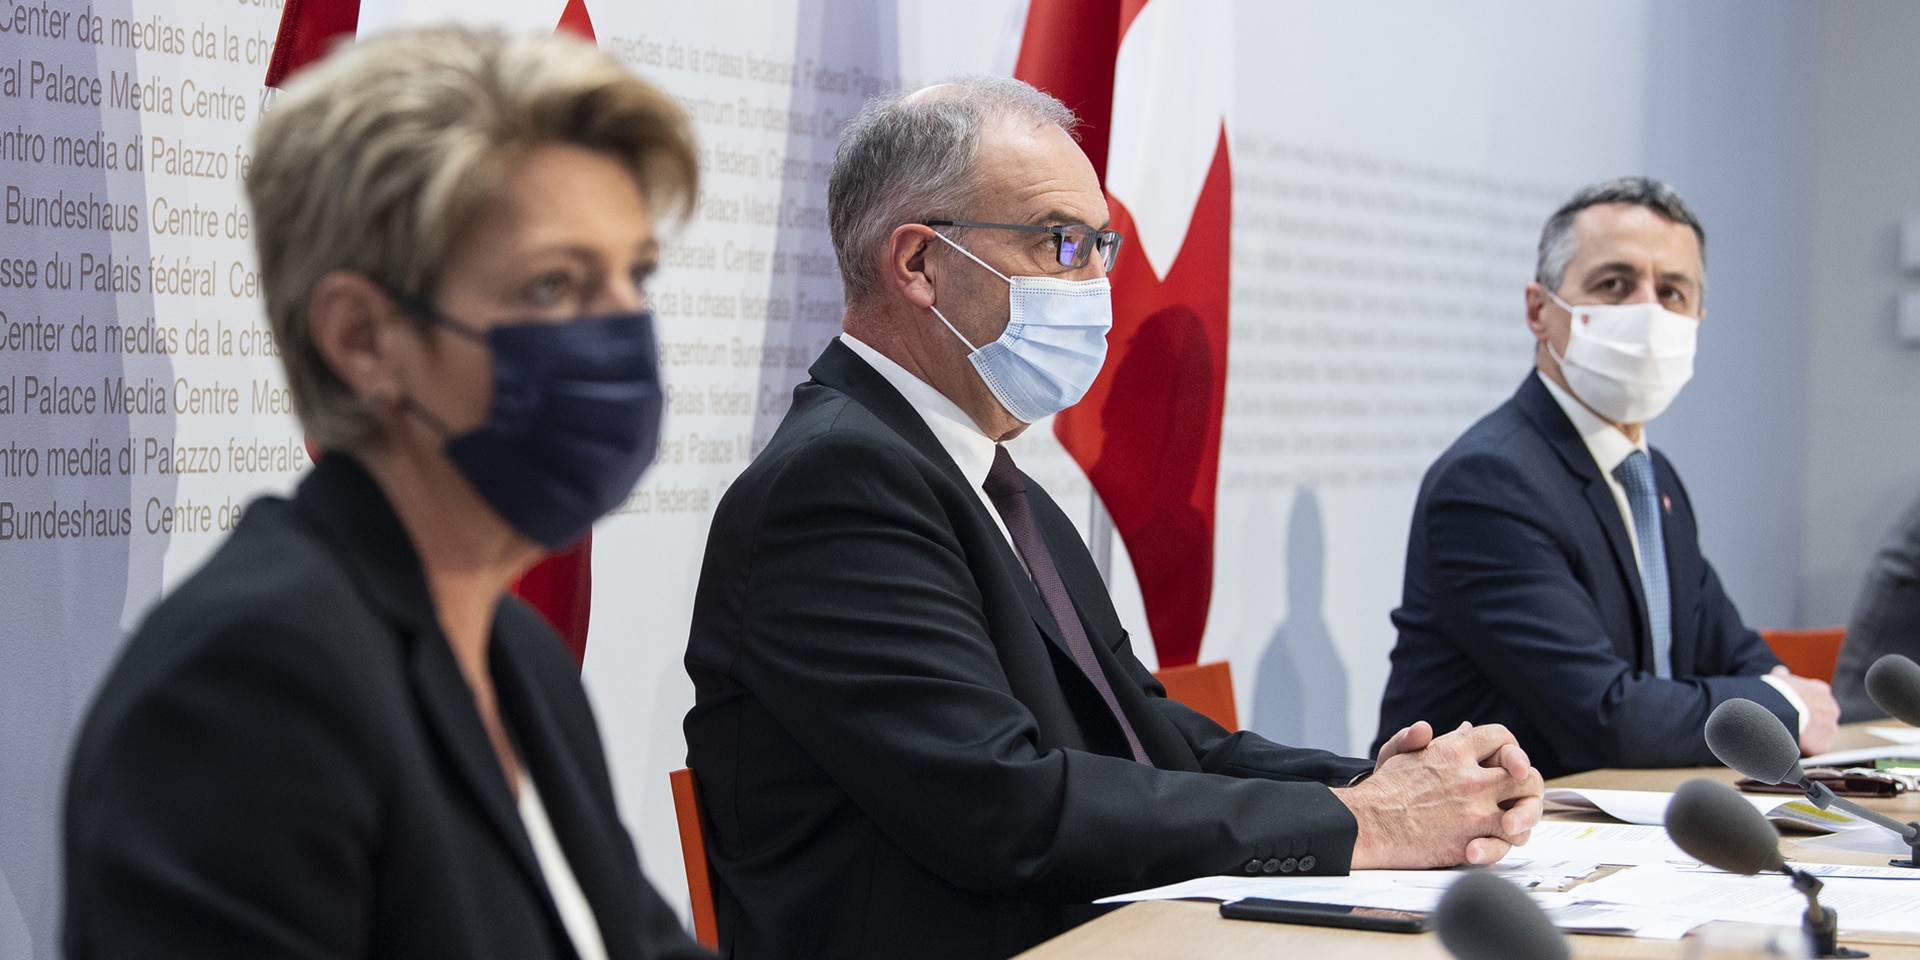 Il presidente Guy Parmelin, il consigliere federale Ignazio Cassis e la consigliera federale Karin Keller-Sutter siedono sul podio del Centro media a Berna.